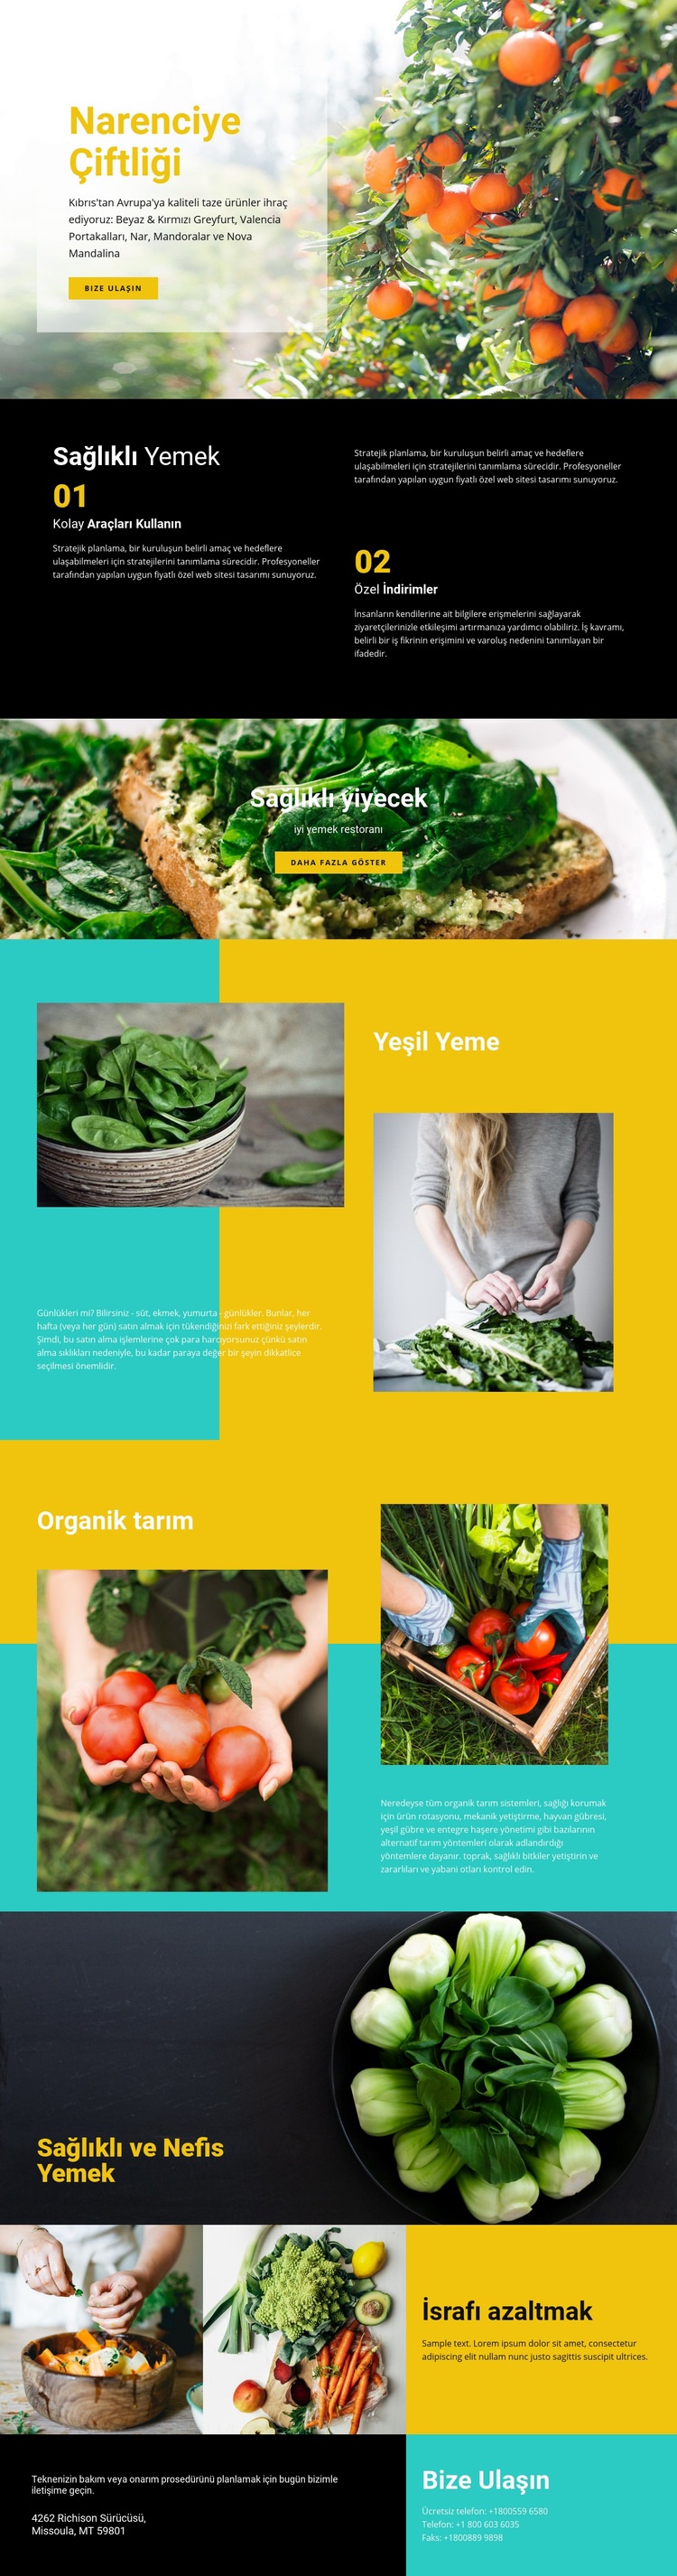 Sağlıklı ve taze yiyecek Web sitesi tasarımı